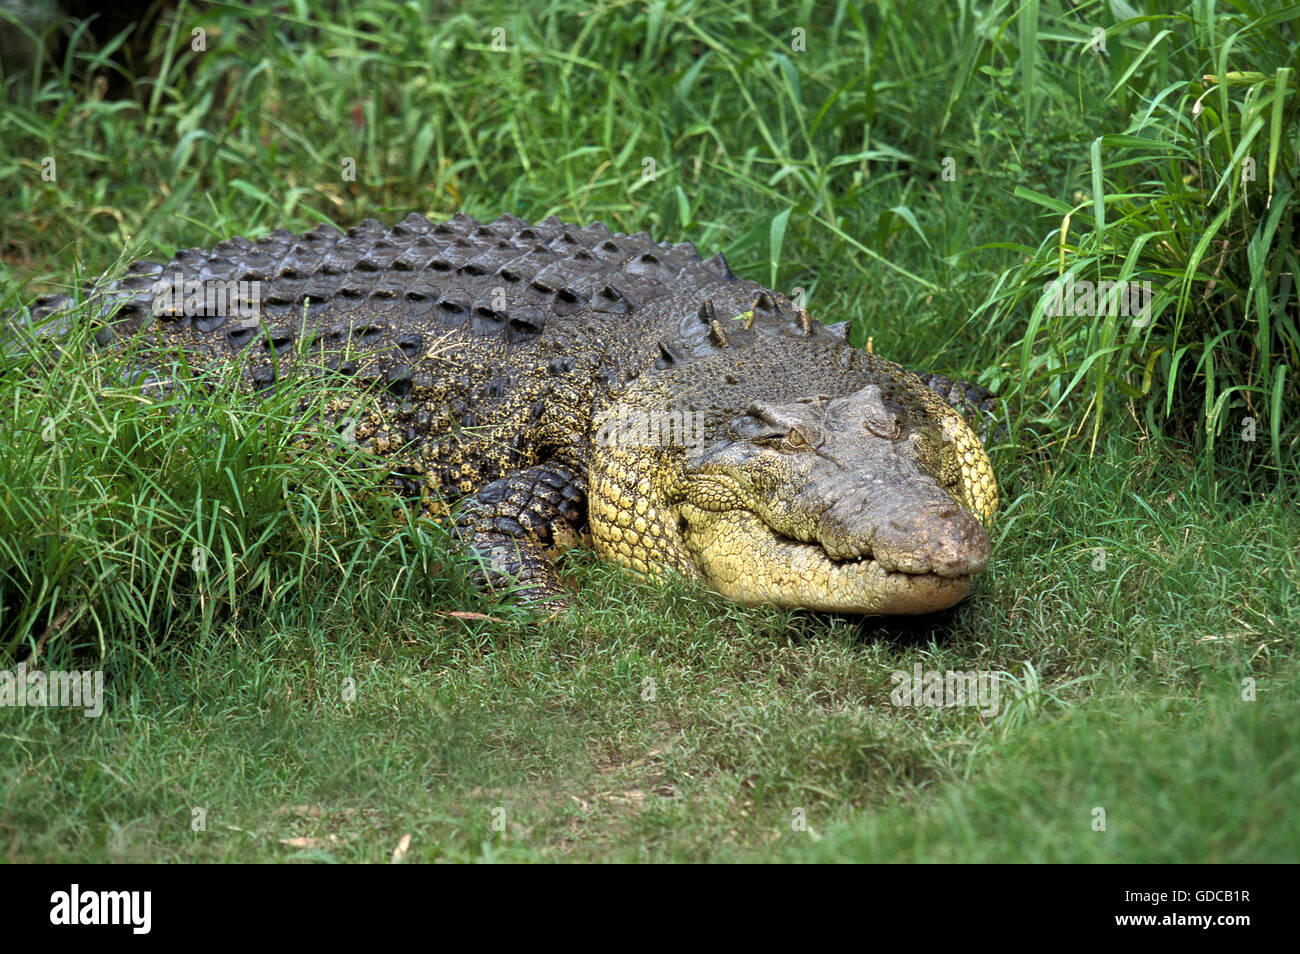 Australian Saltwater Crocodile or Estuarine Crocodile, crocodylus porosus,  Australia Stock Photo - Alamy